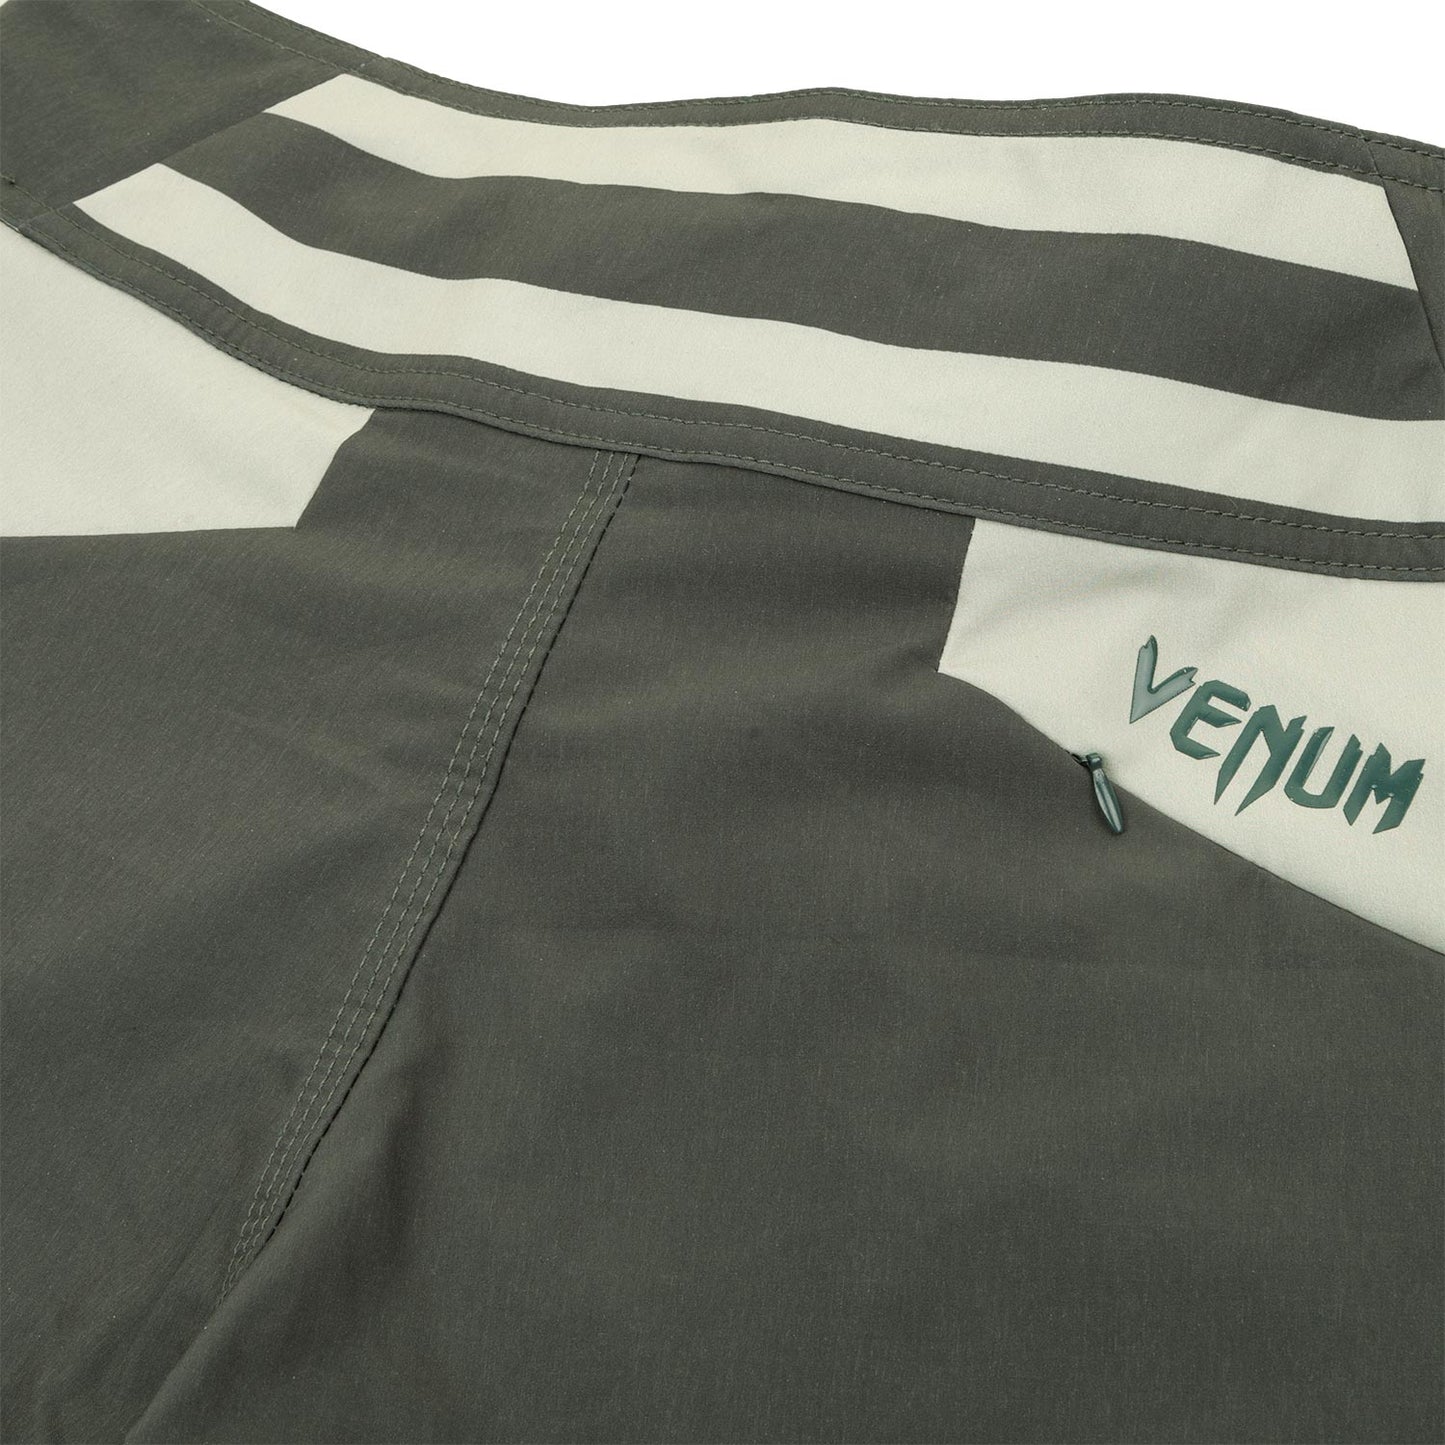 Venum Cargo Boardshorts - Dark khaki/Beige-Khaki